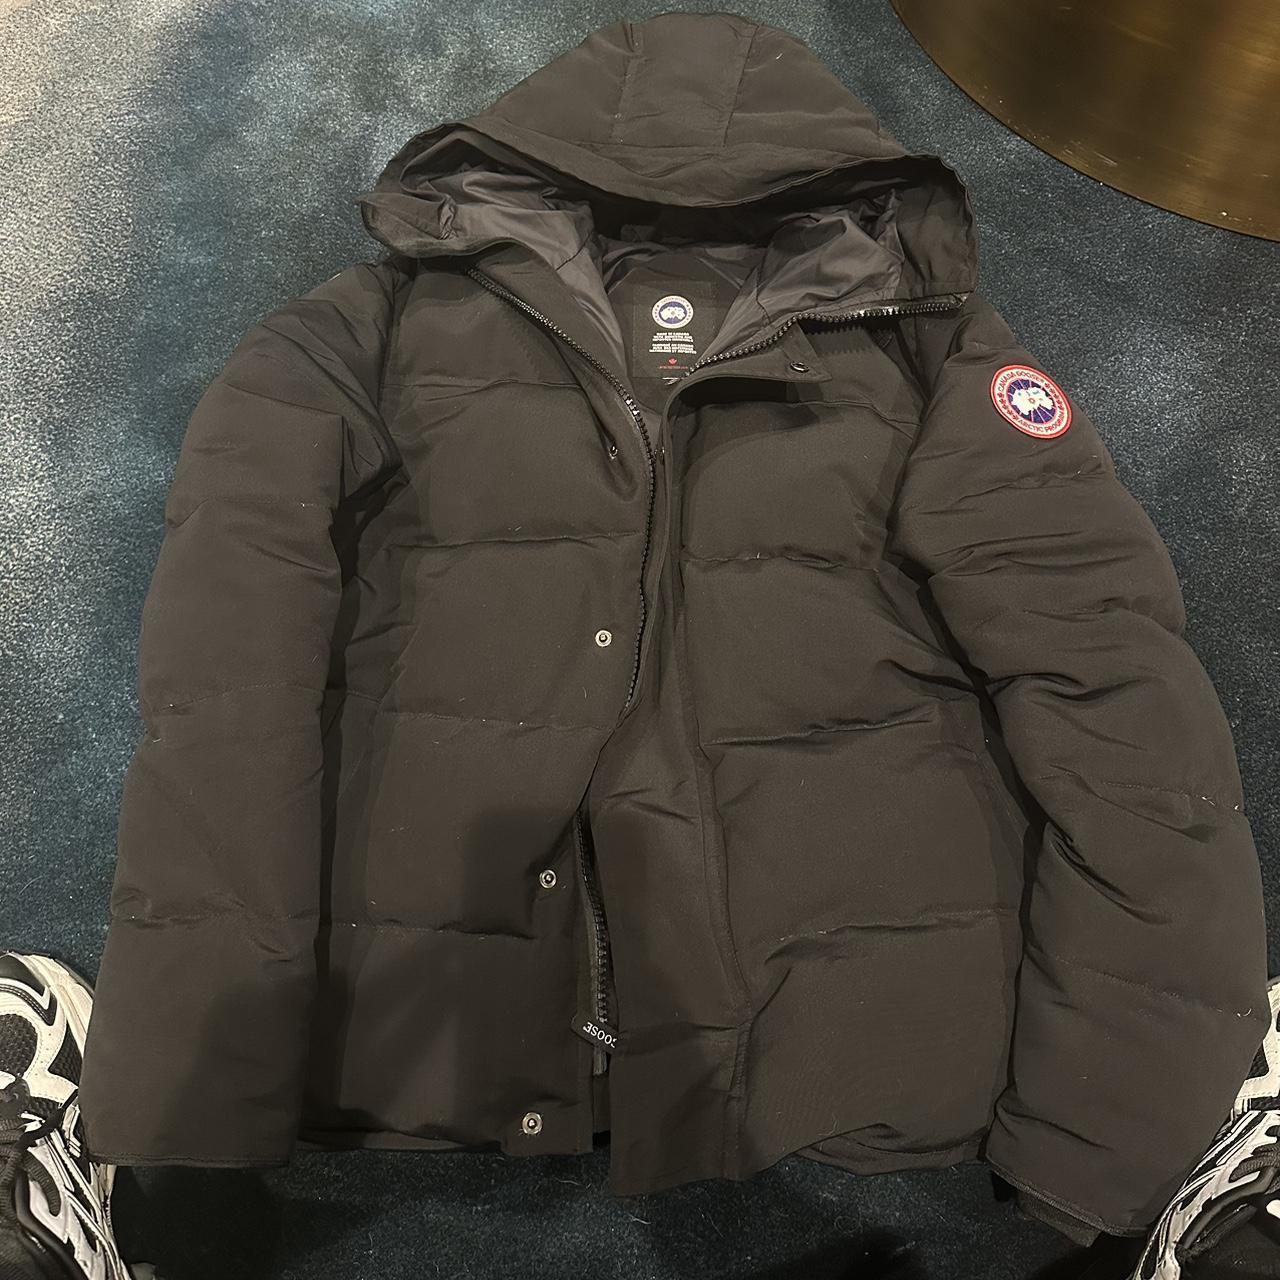 Canada goose Macmillan coat size XL - Depop